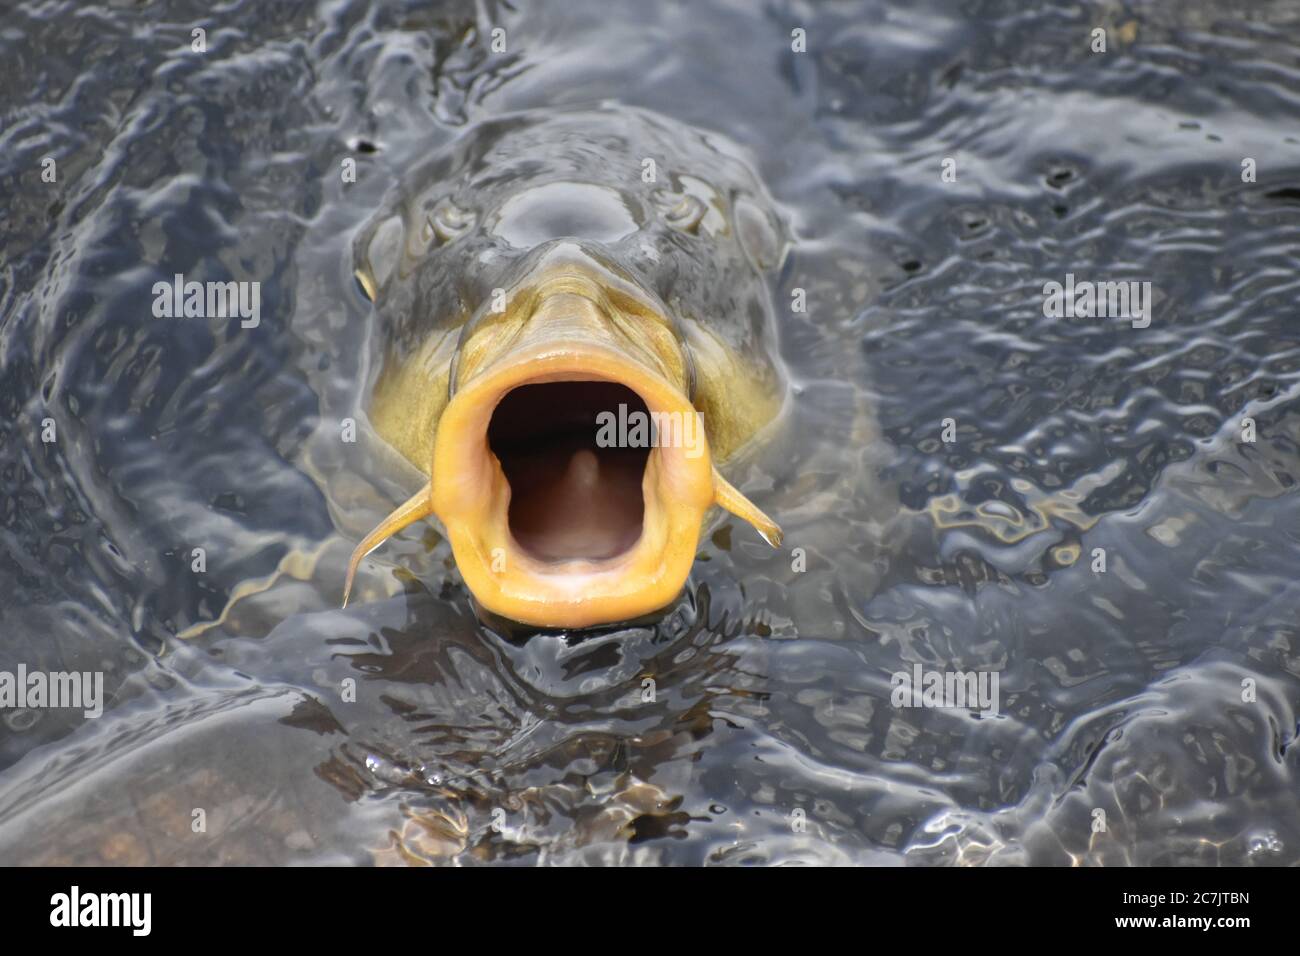 Una bella foto closeup di pesce in un lago a Jammu India. Foto Stock